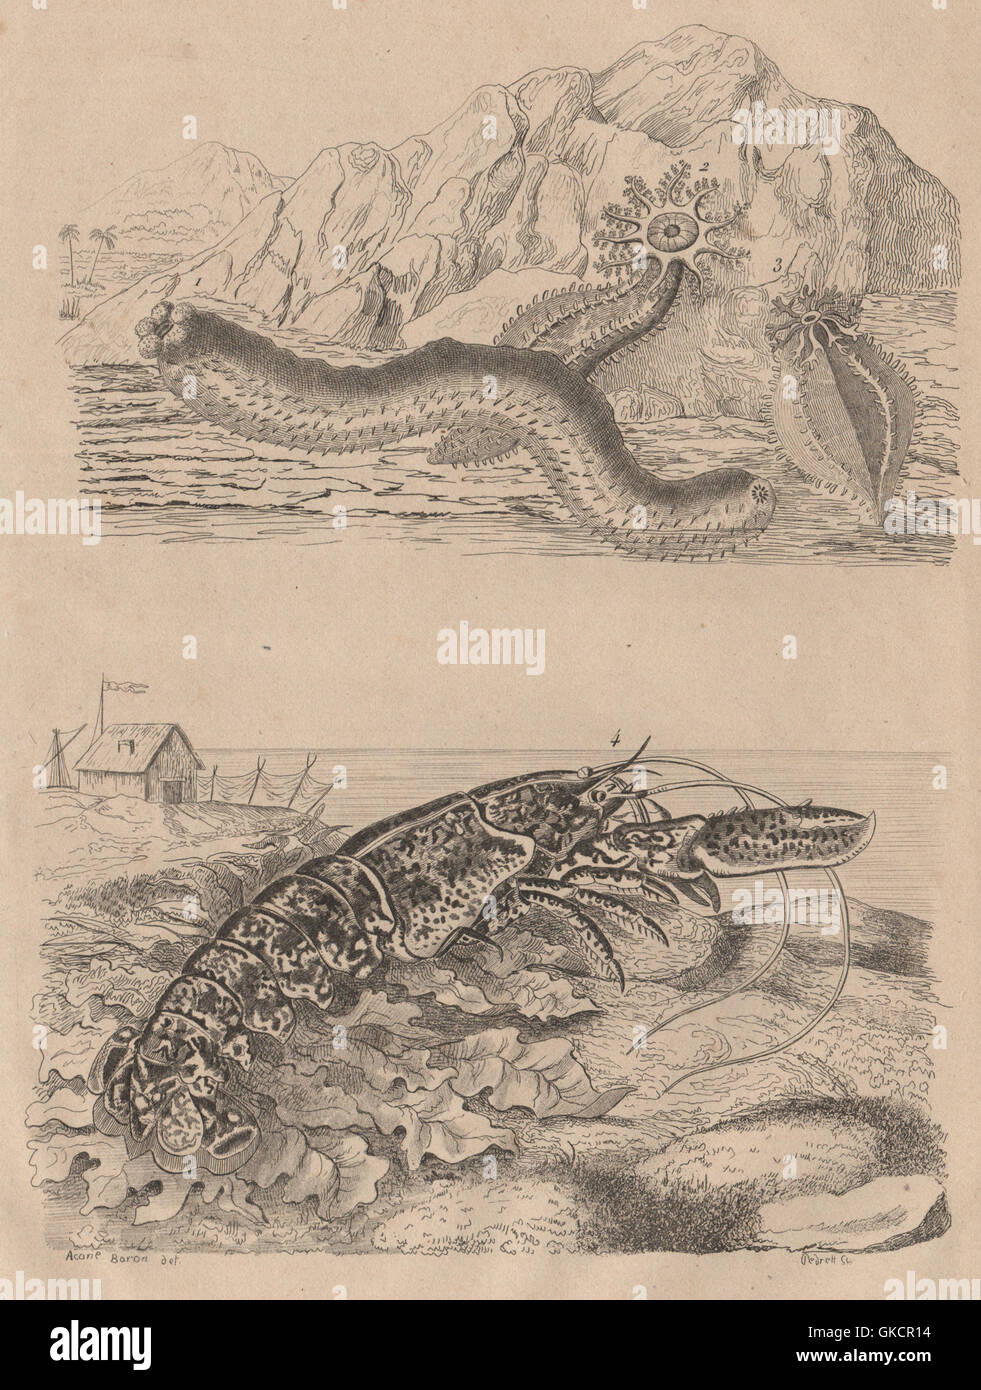 Las criaturas del mar: Holoturies (holoturias). Homard (langosta), impresión de antigüedades 1834 Foto de stock